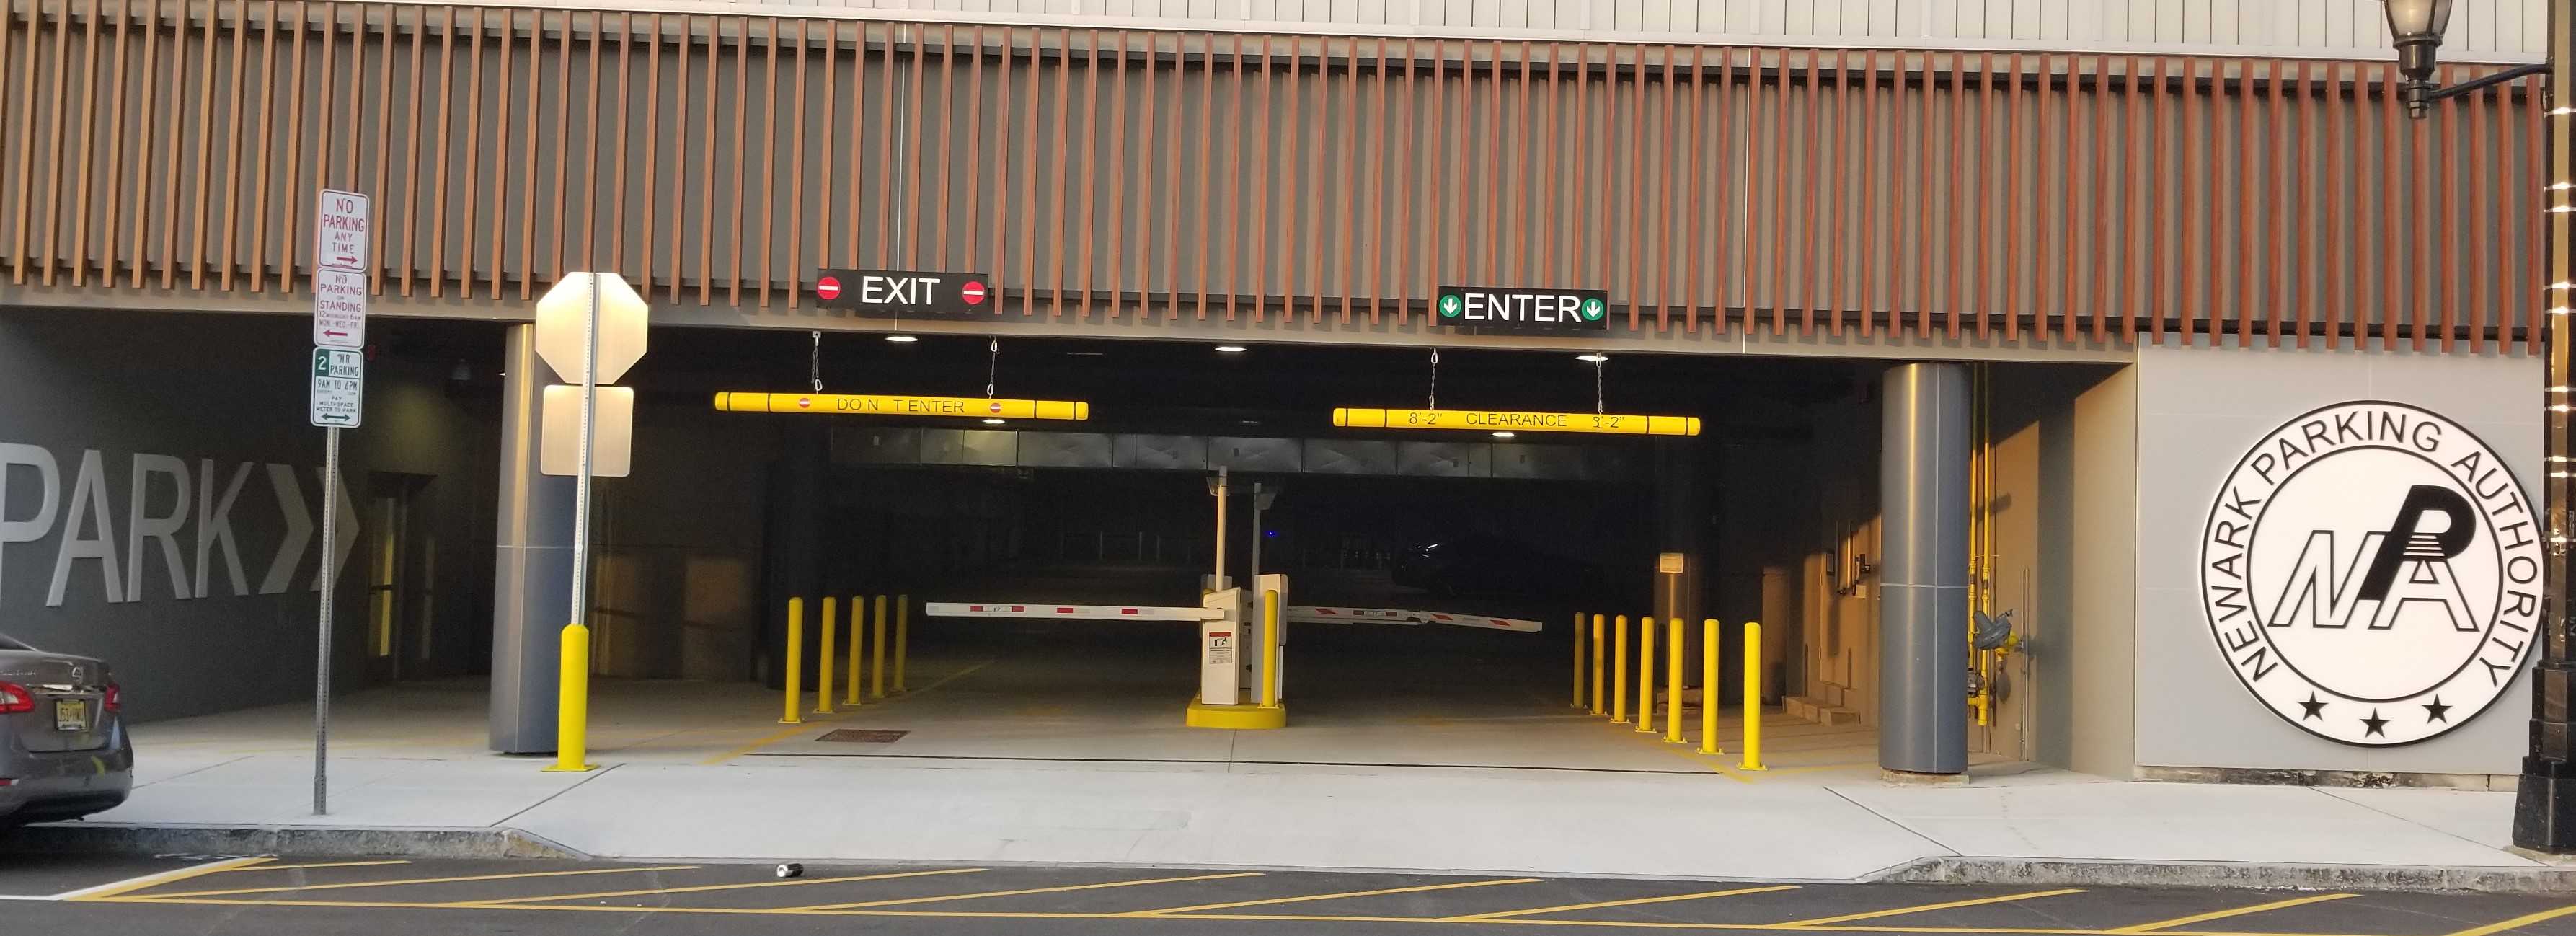 Newark Parking Authority Garage   details